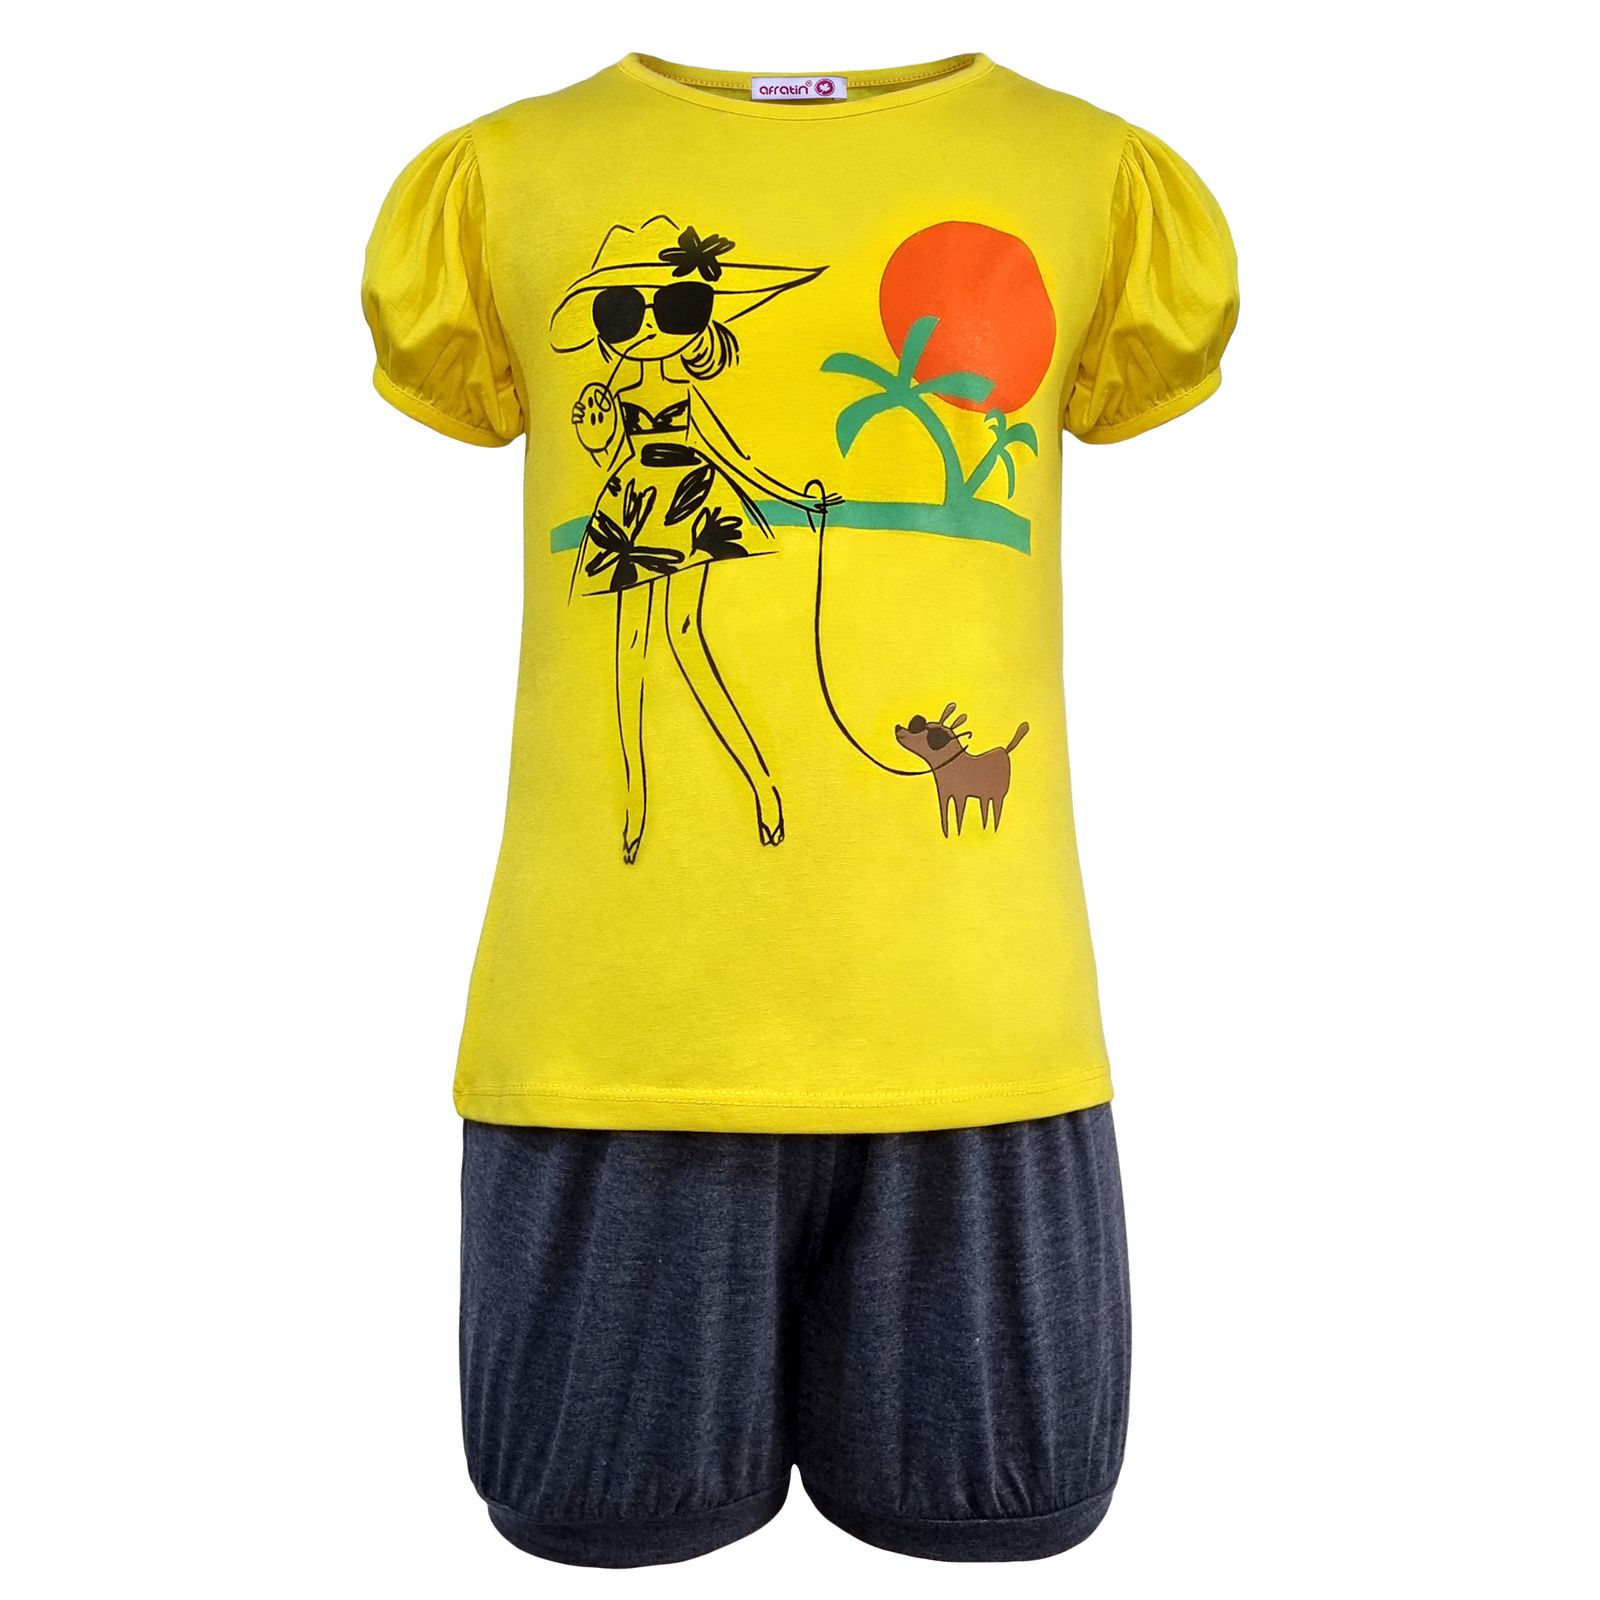 ست تی شرت و شلوارک دخترانه افراتین مدل دختر ساحلی رنگ زرد -  - 1